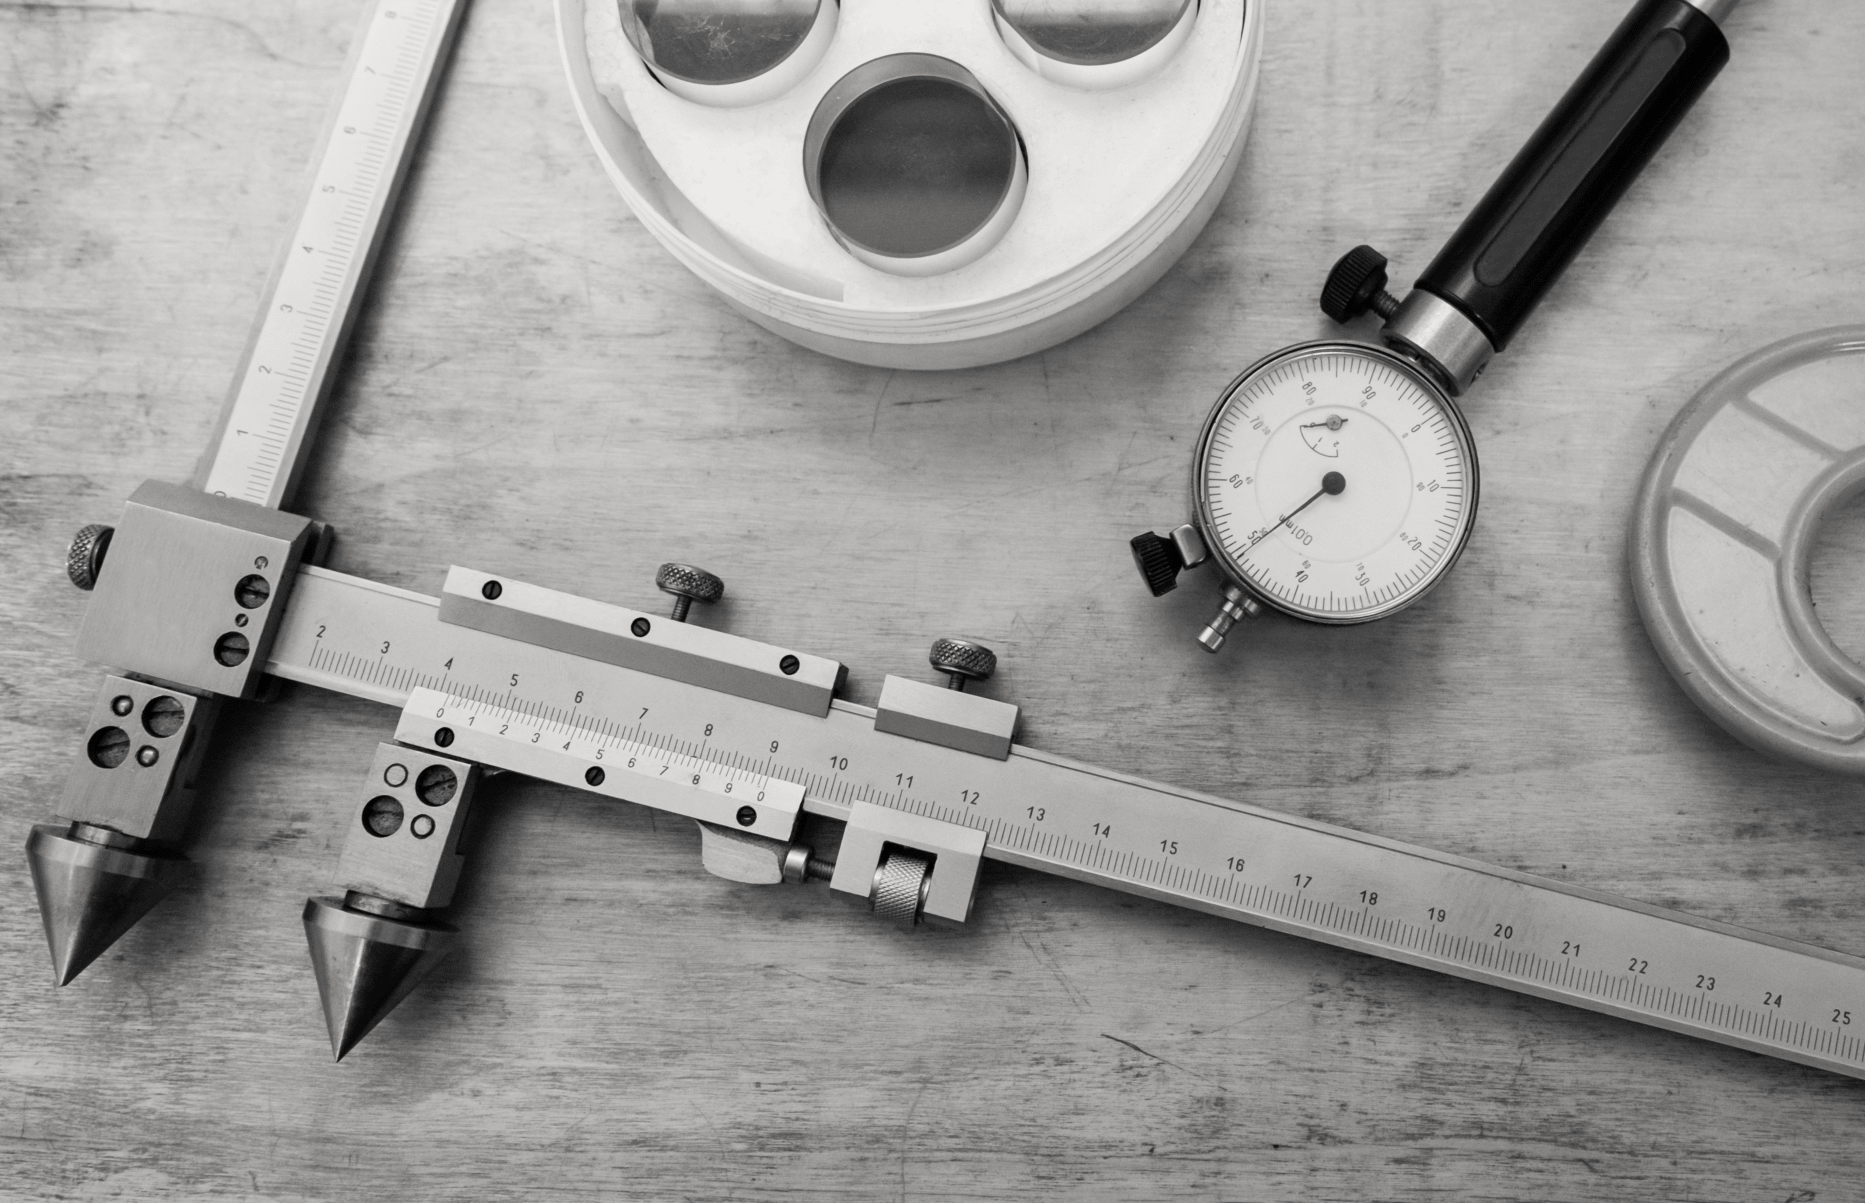 Instrumentos de medição do metal em uma tabela de madeira